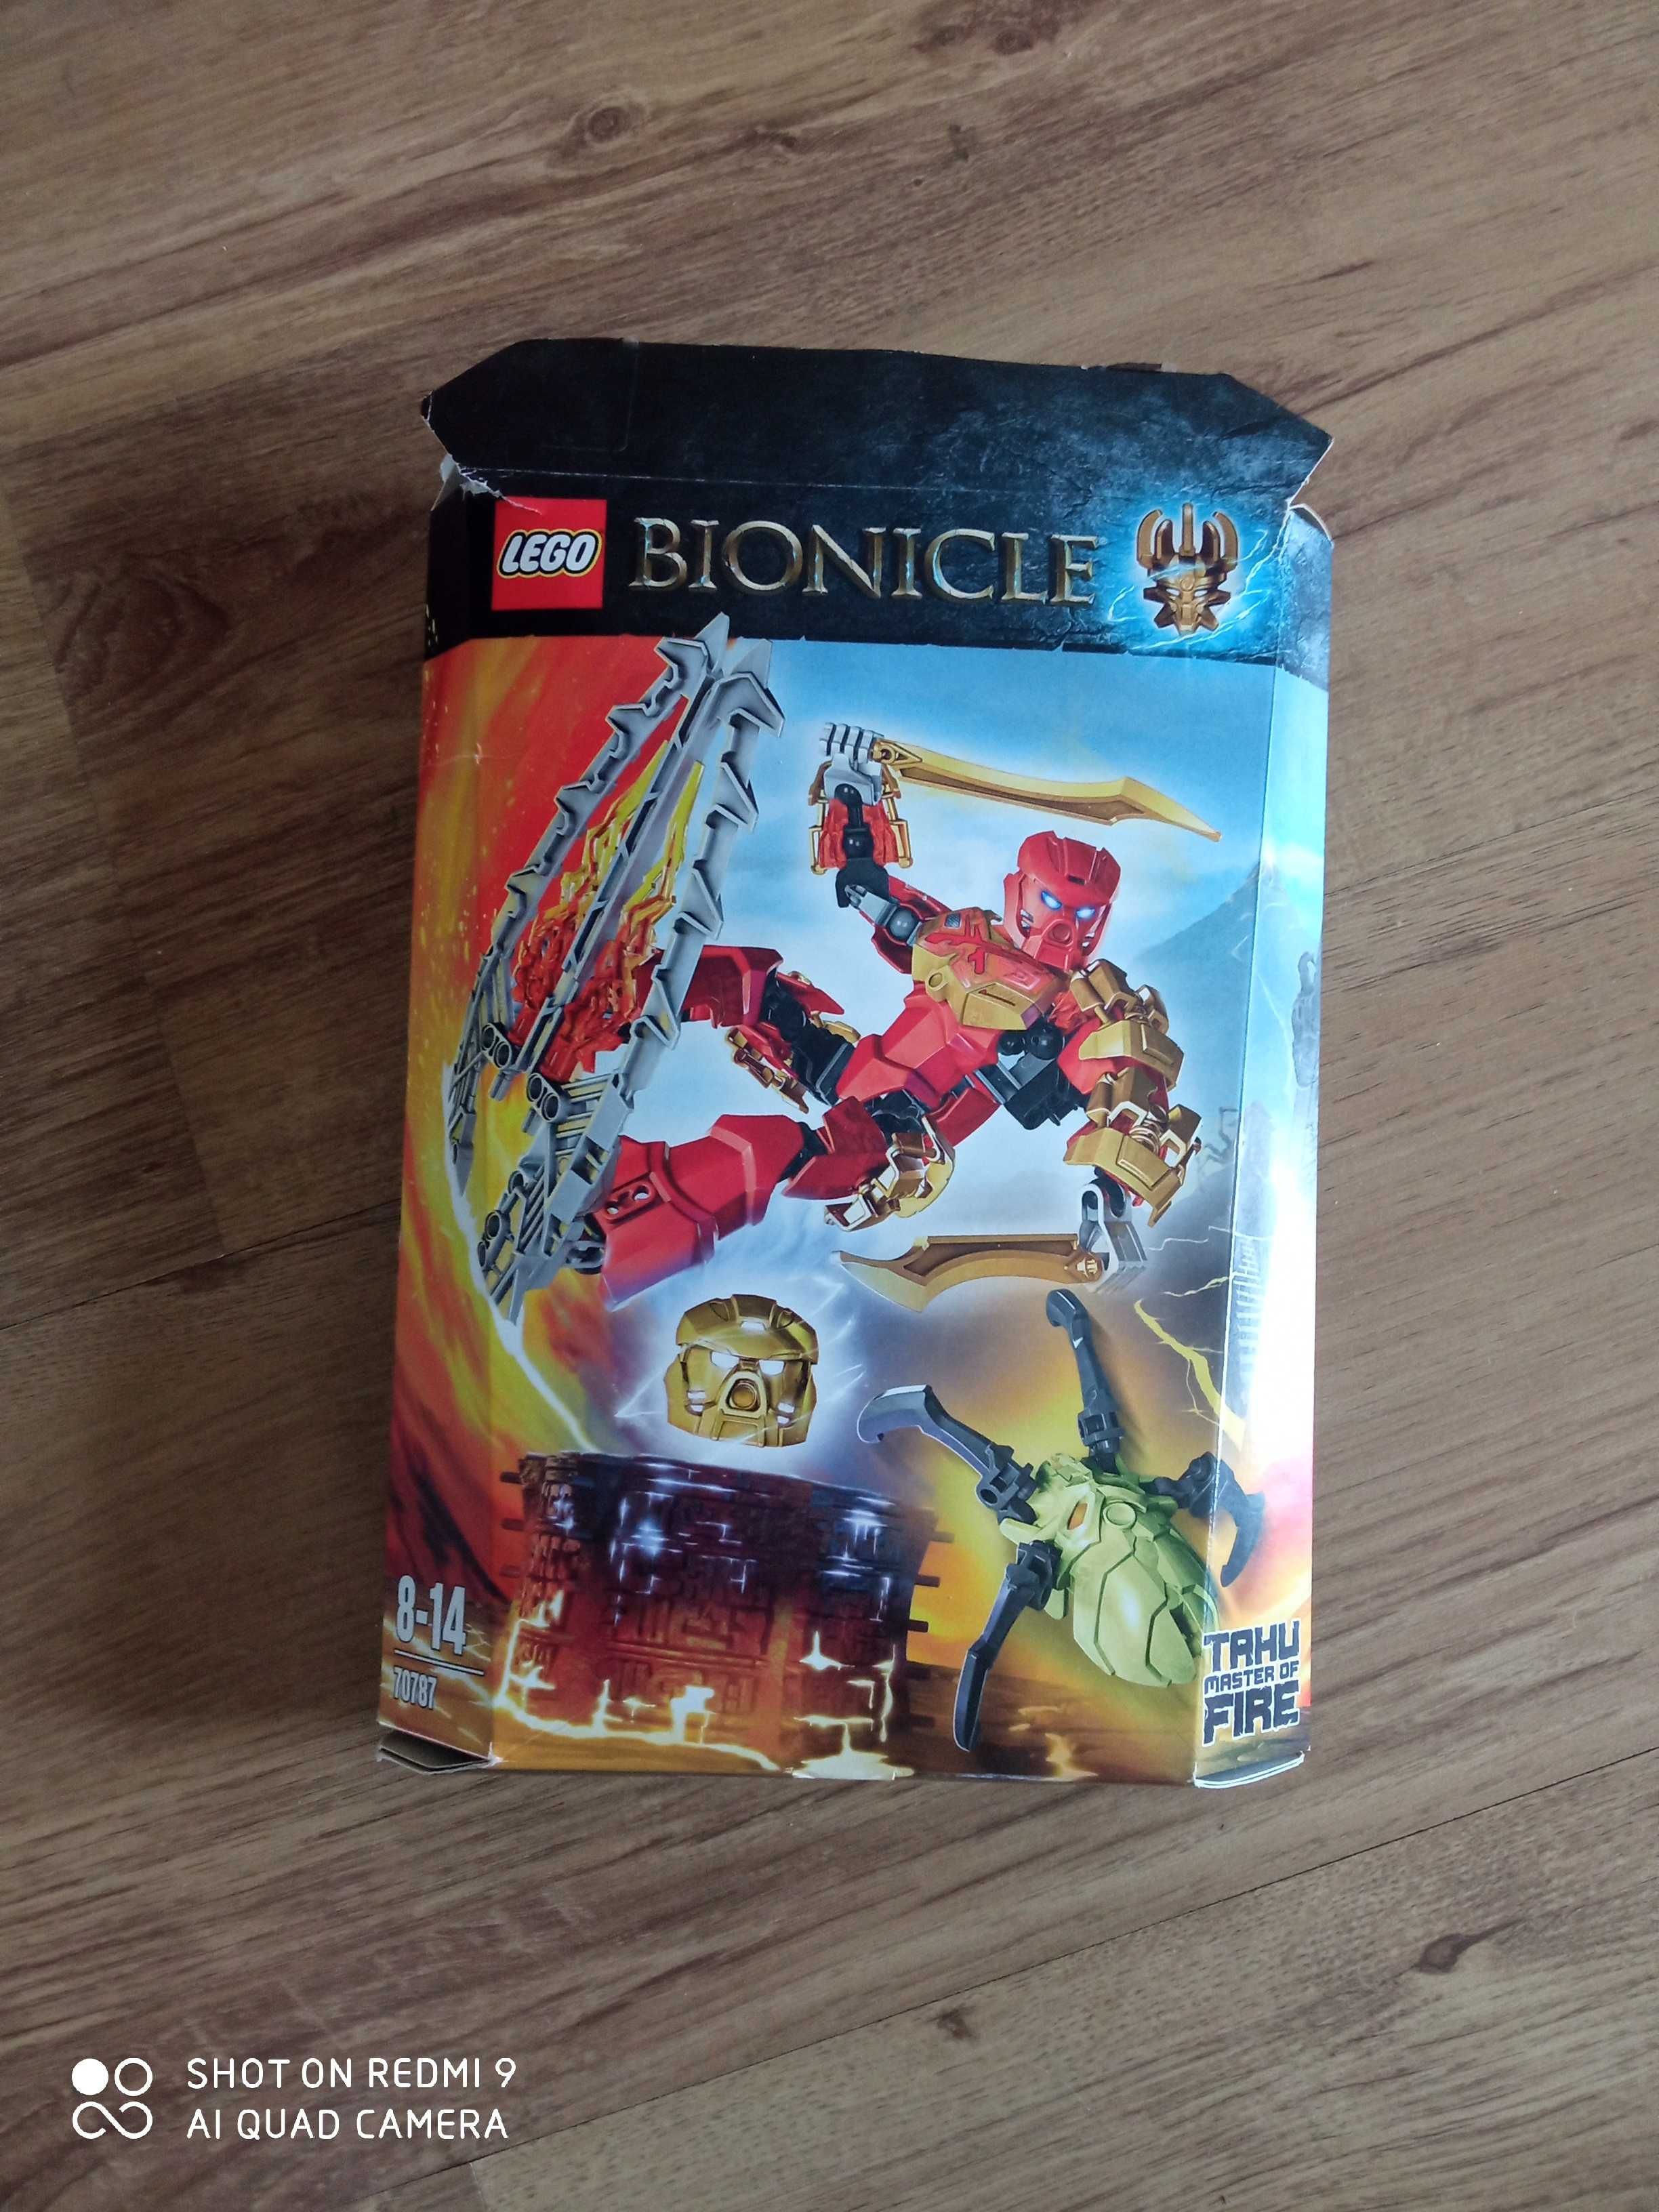 LEGO Bionicle 70787